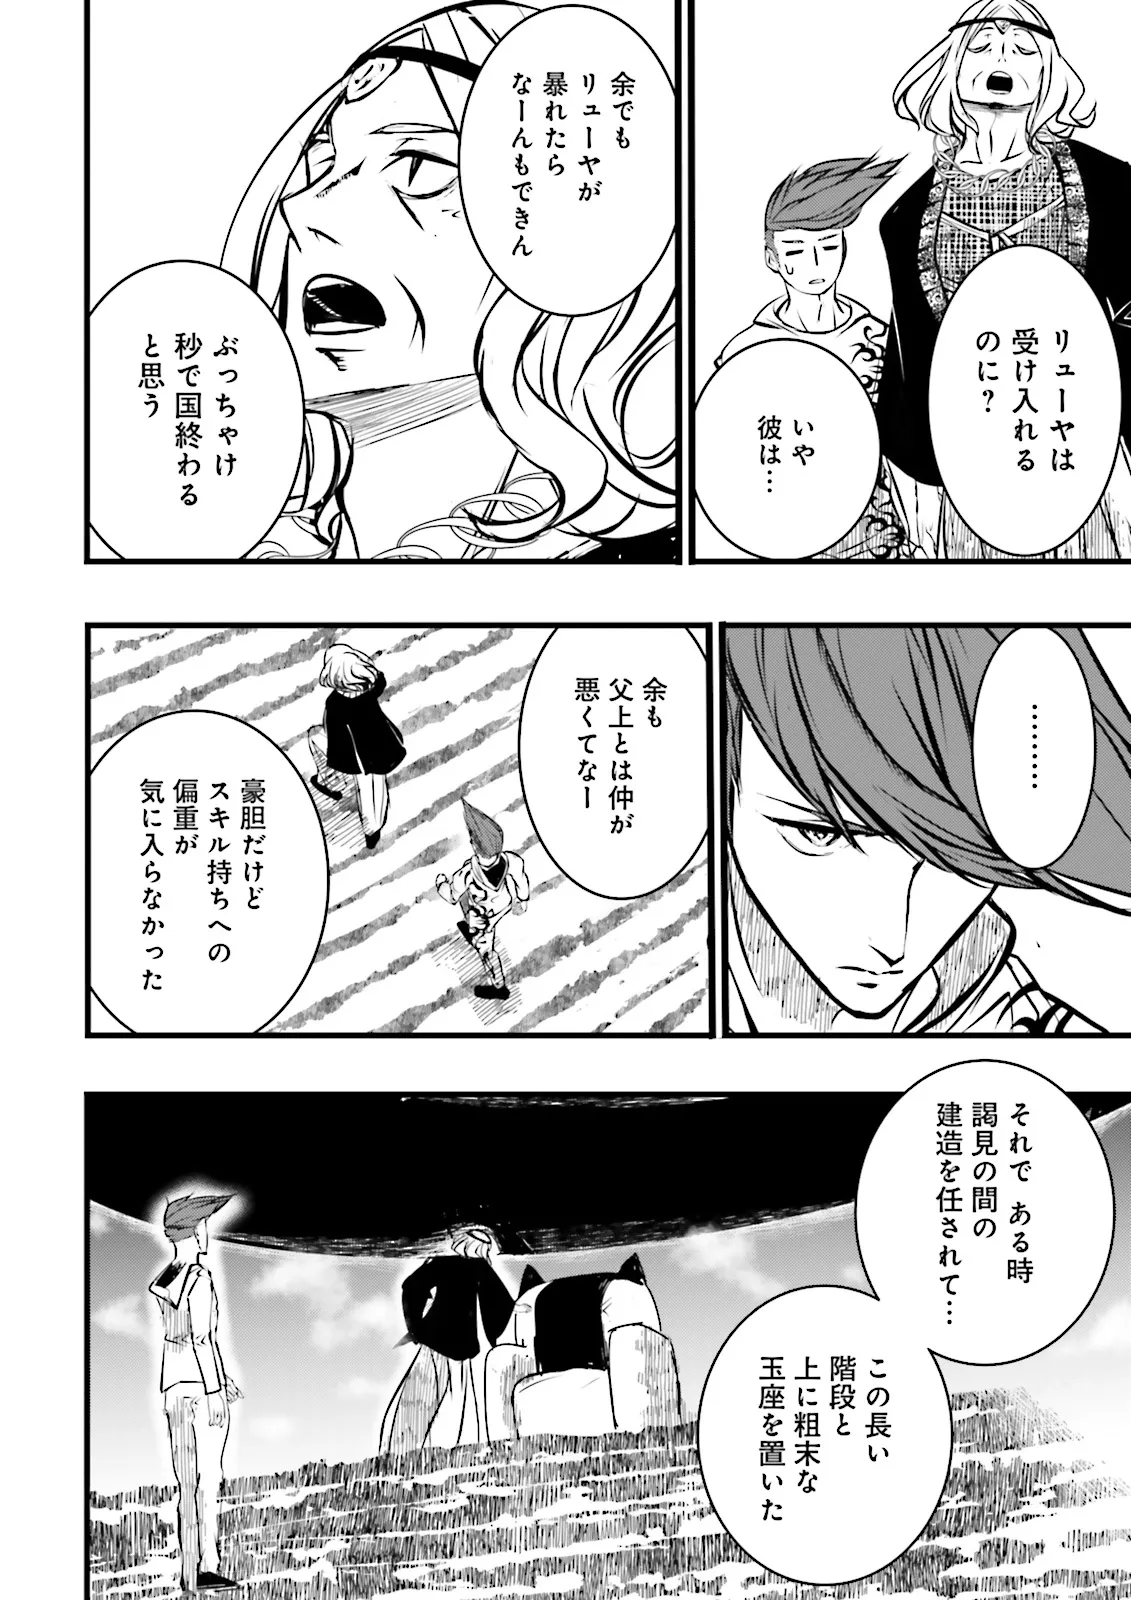 Sukiru Ga Nakereba Level wo Ageru ~ 99 Ga Kansuto No Sekai De Reberu 800 Man Kara Sutato ~ - Chapter 40.4 - Page 2